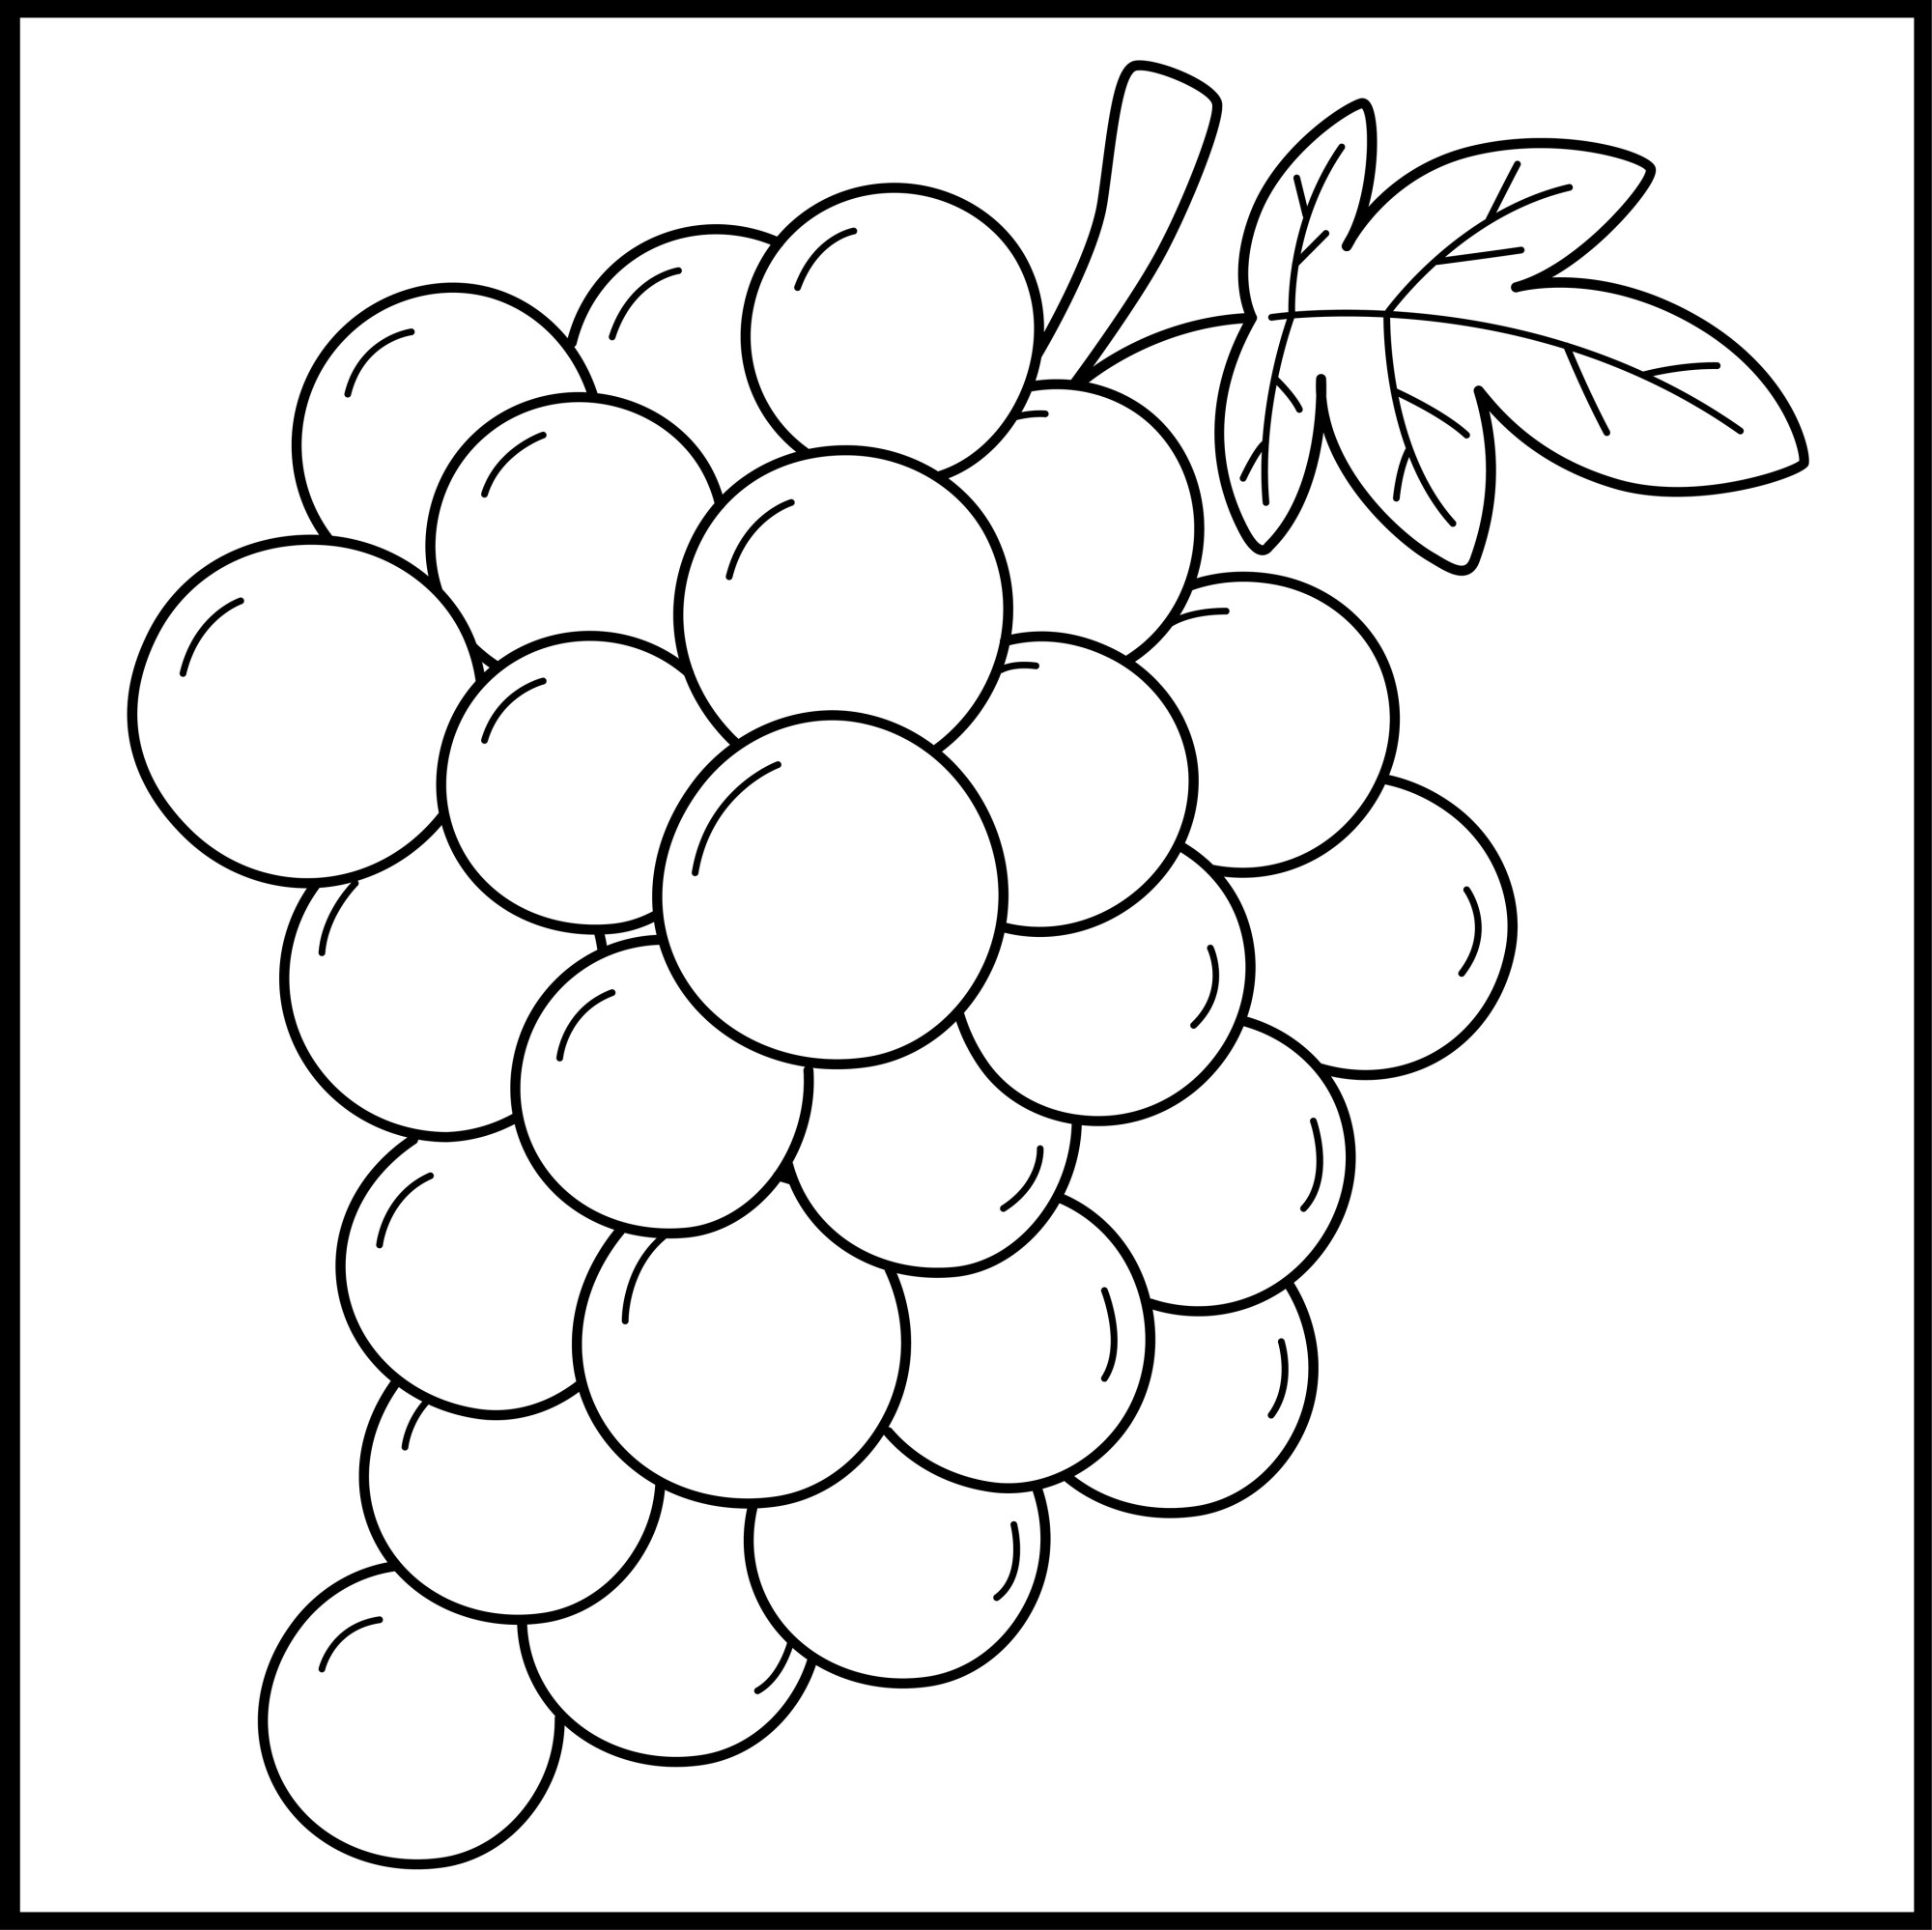 Раскраска для детей: ягоды винограда на ветке